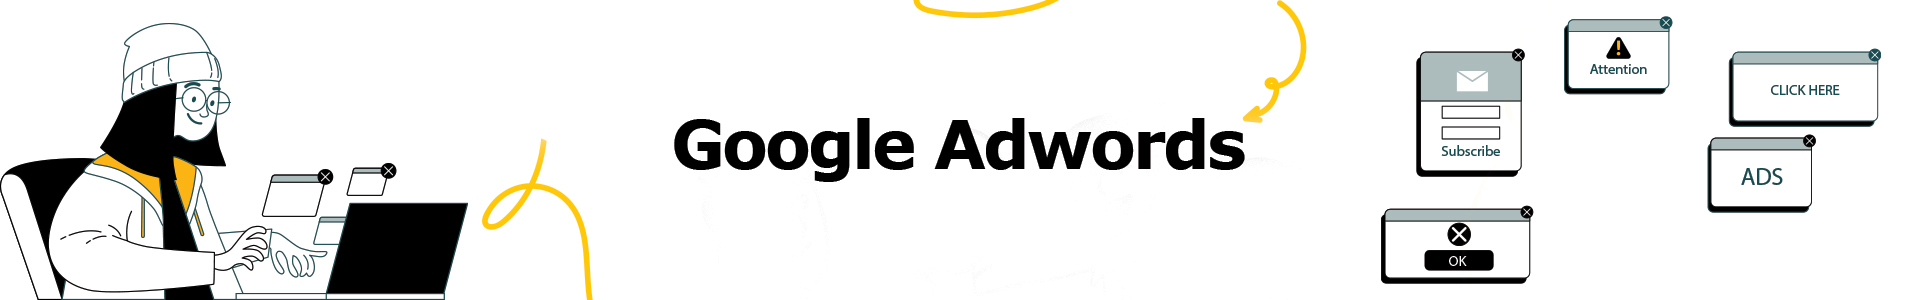 Google-ads